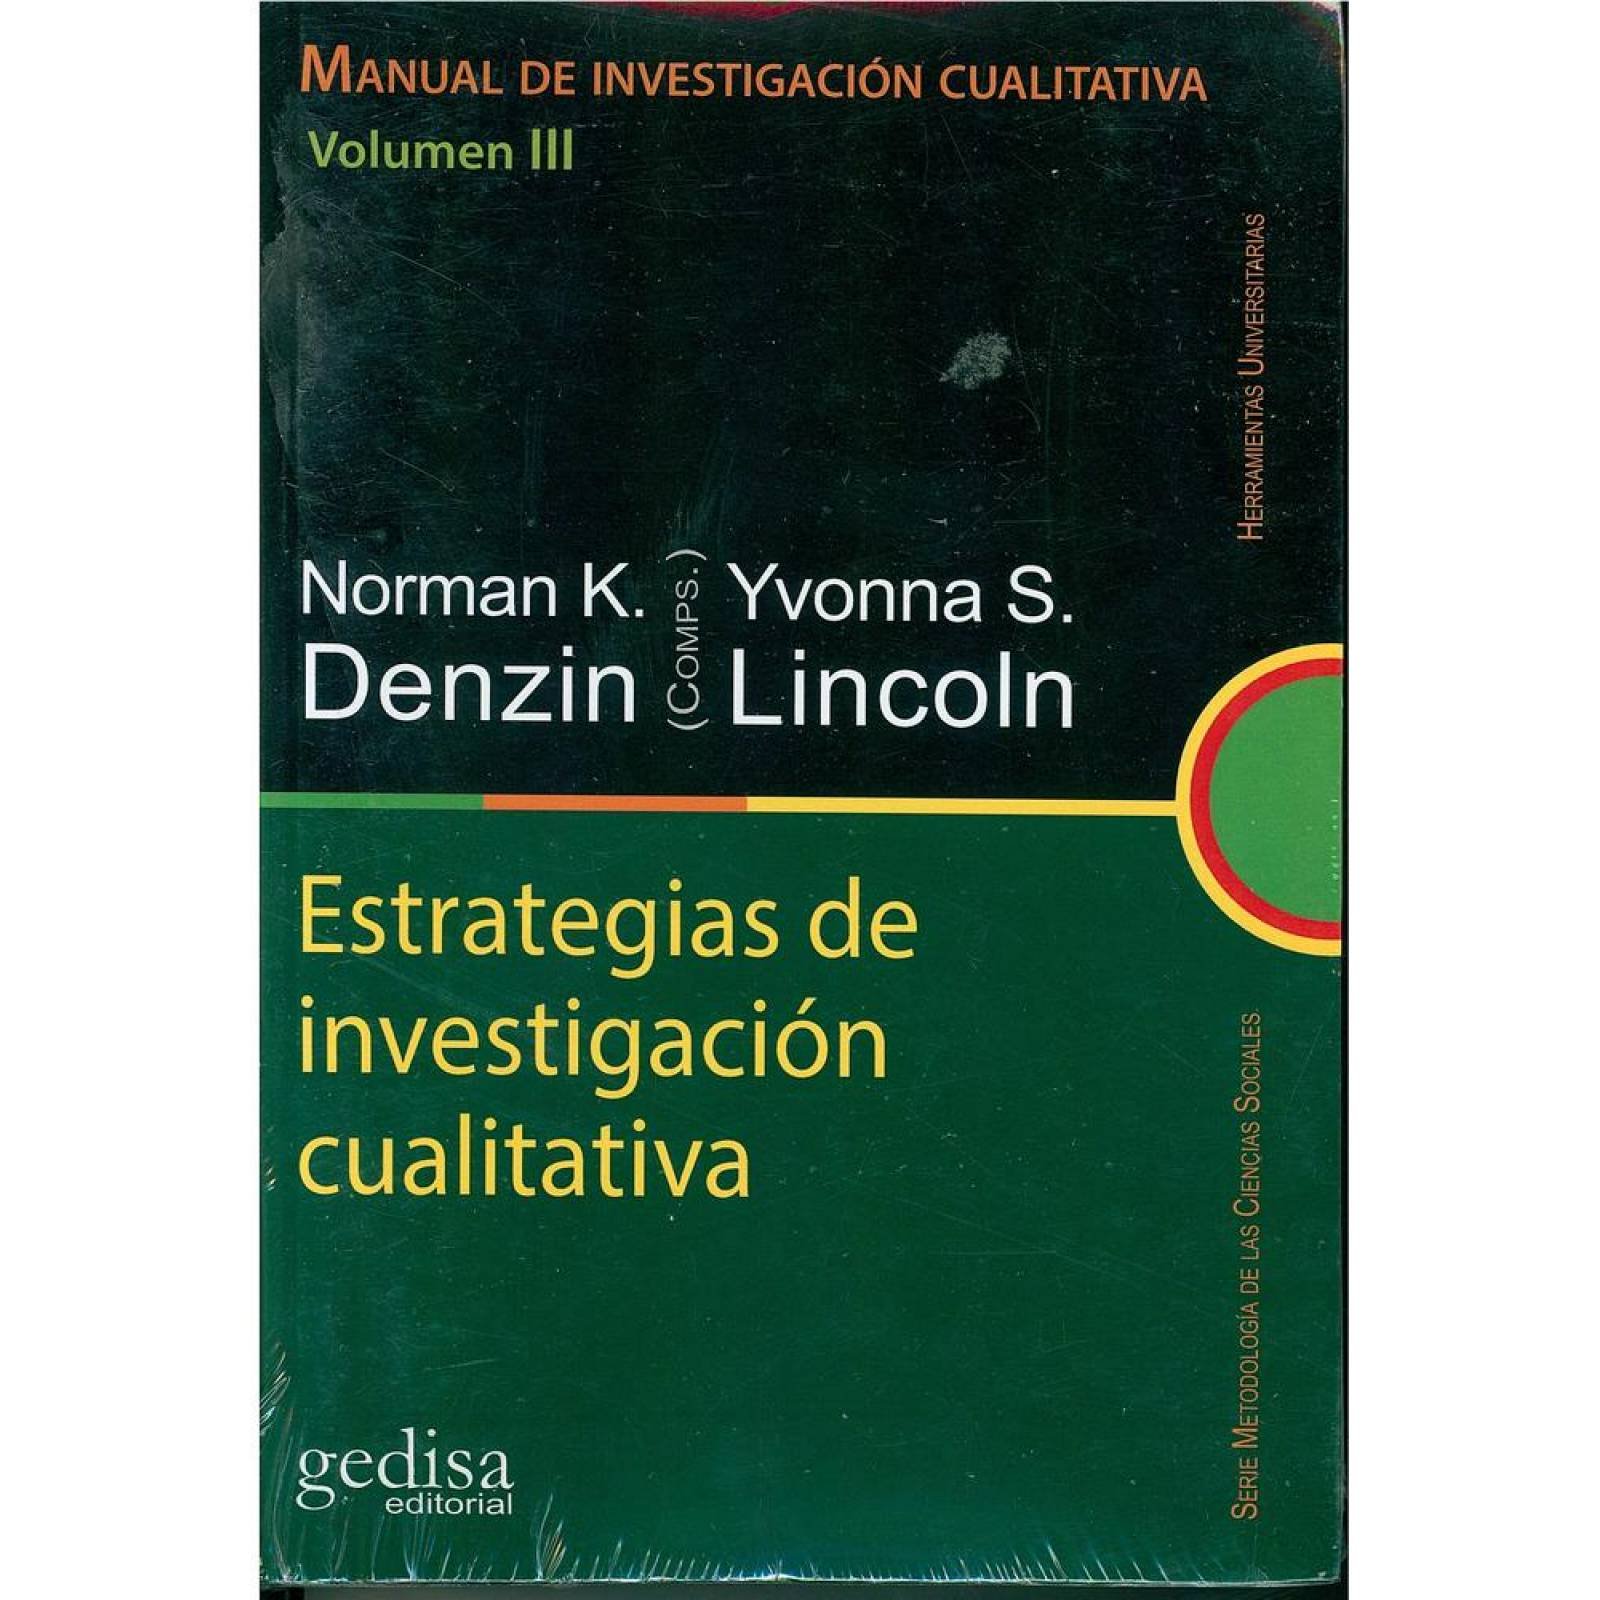 Manual de Investigación Cualitativa Vol. III 